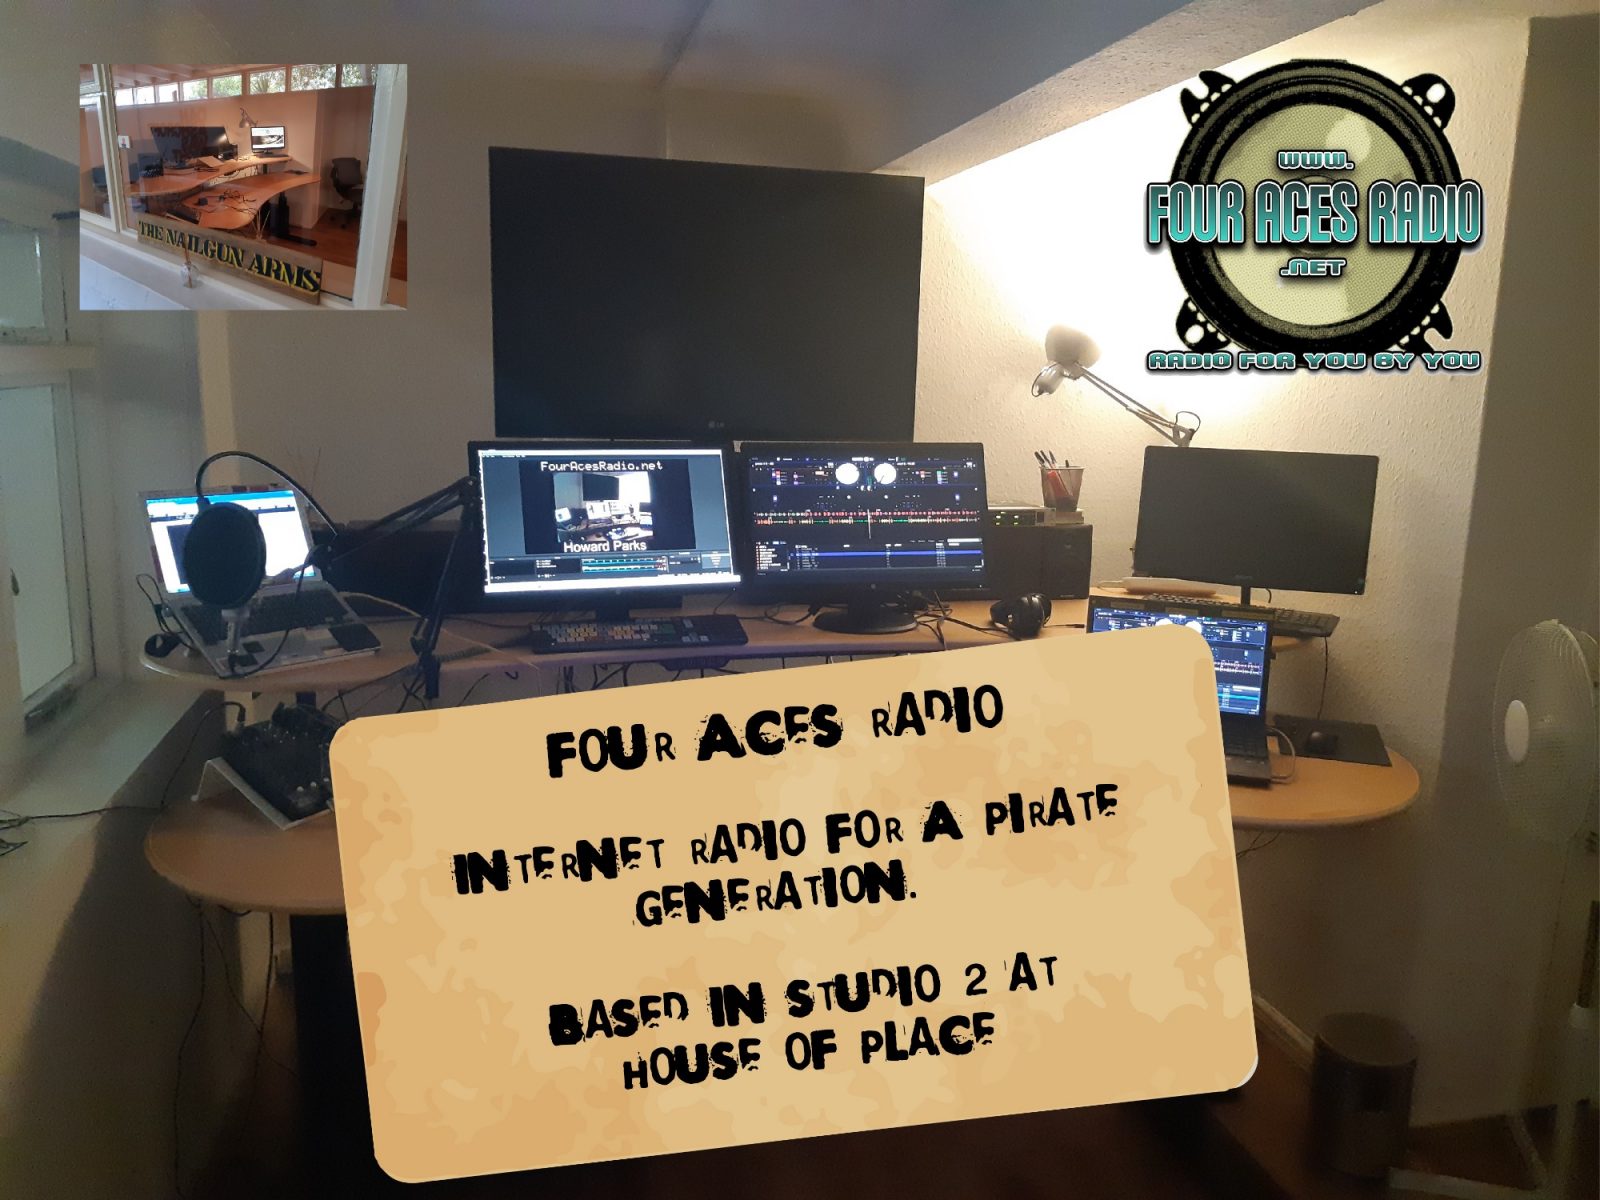 Live djs - Music - four aces radio www.fouracesradio.net